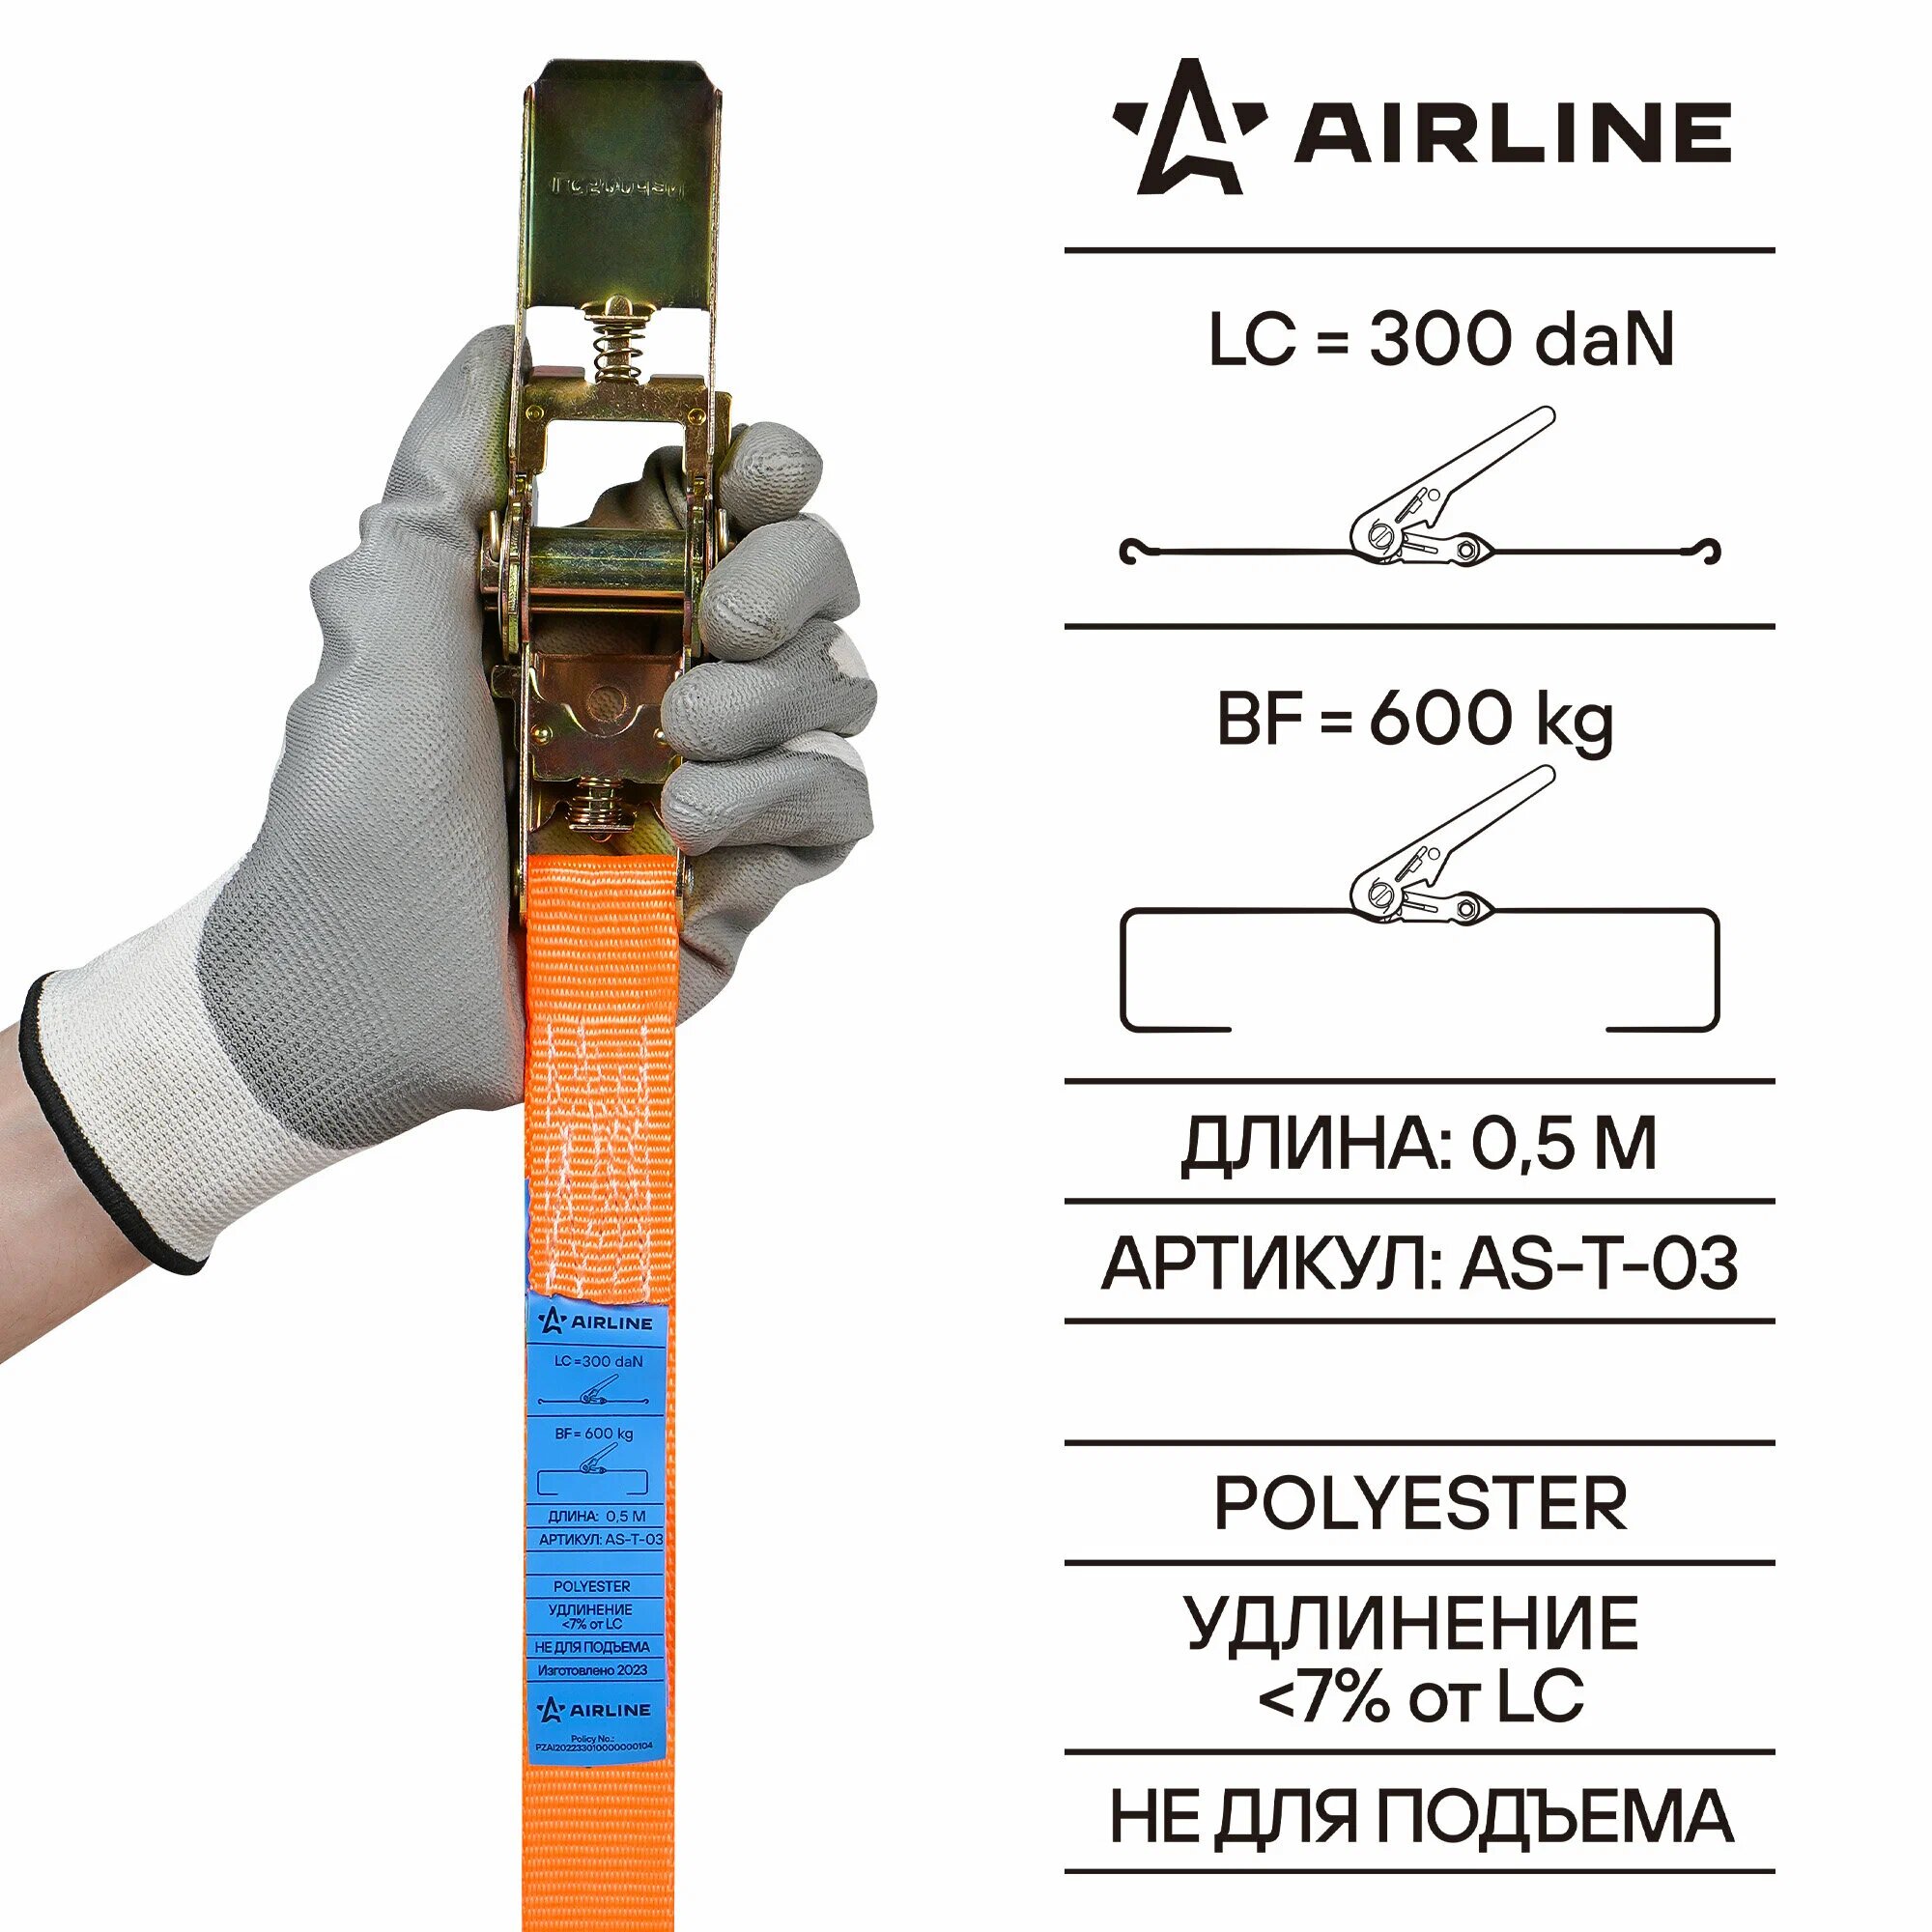 Стяжка для груза с трещоткой 6м, 0,6т (Airline)